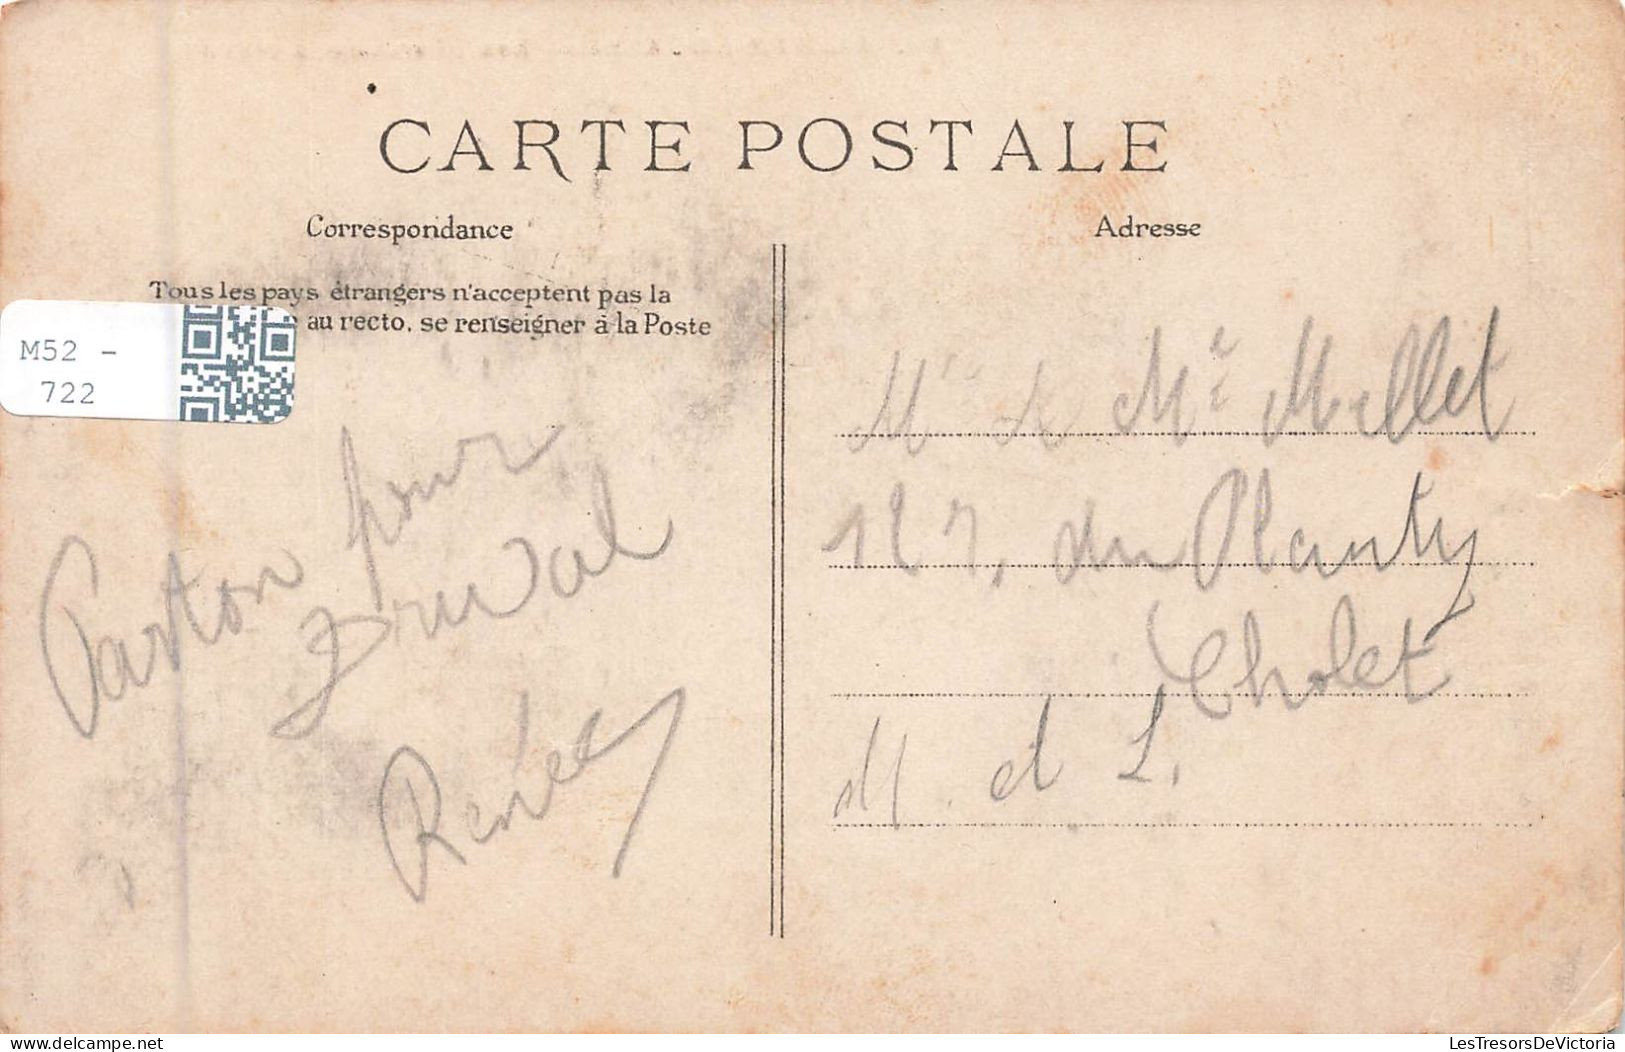 FRANCE - Sainte Adresse - Les Phares De La Hêve - Carte Postale Ancienne - Sainte Adresse